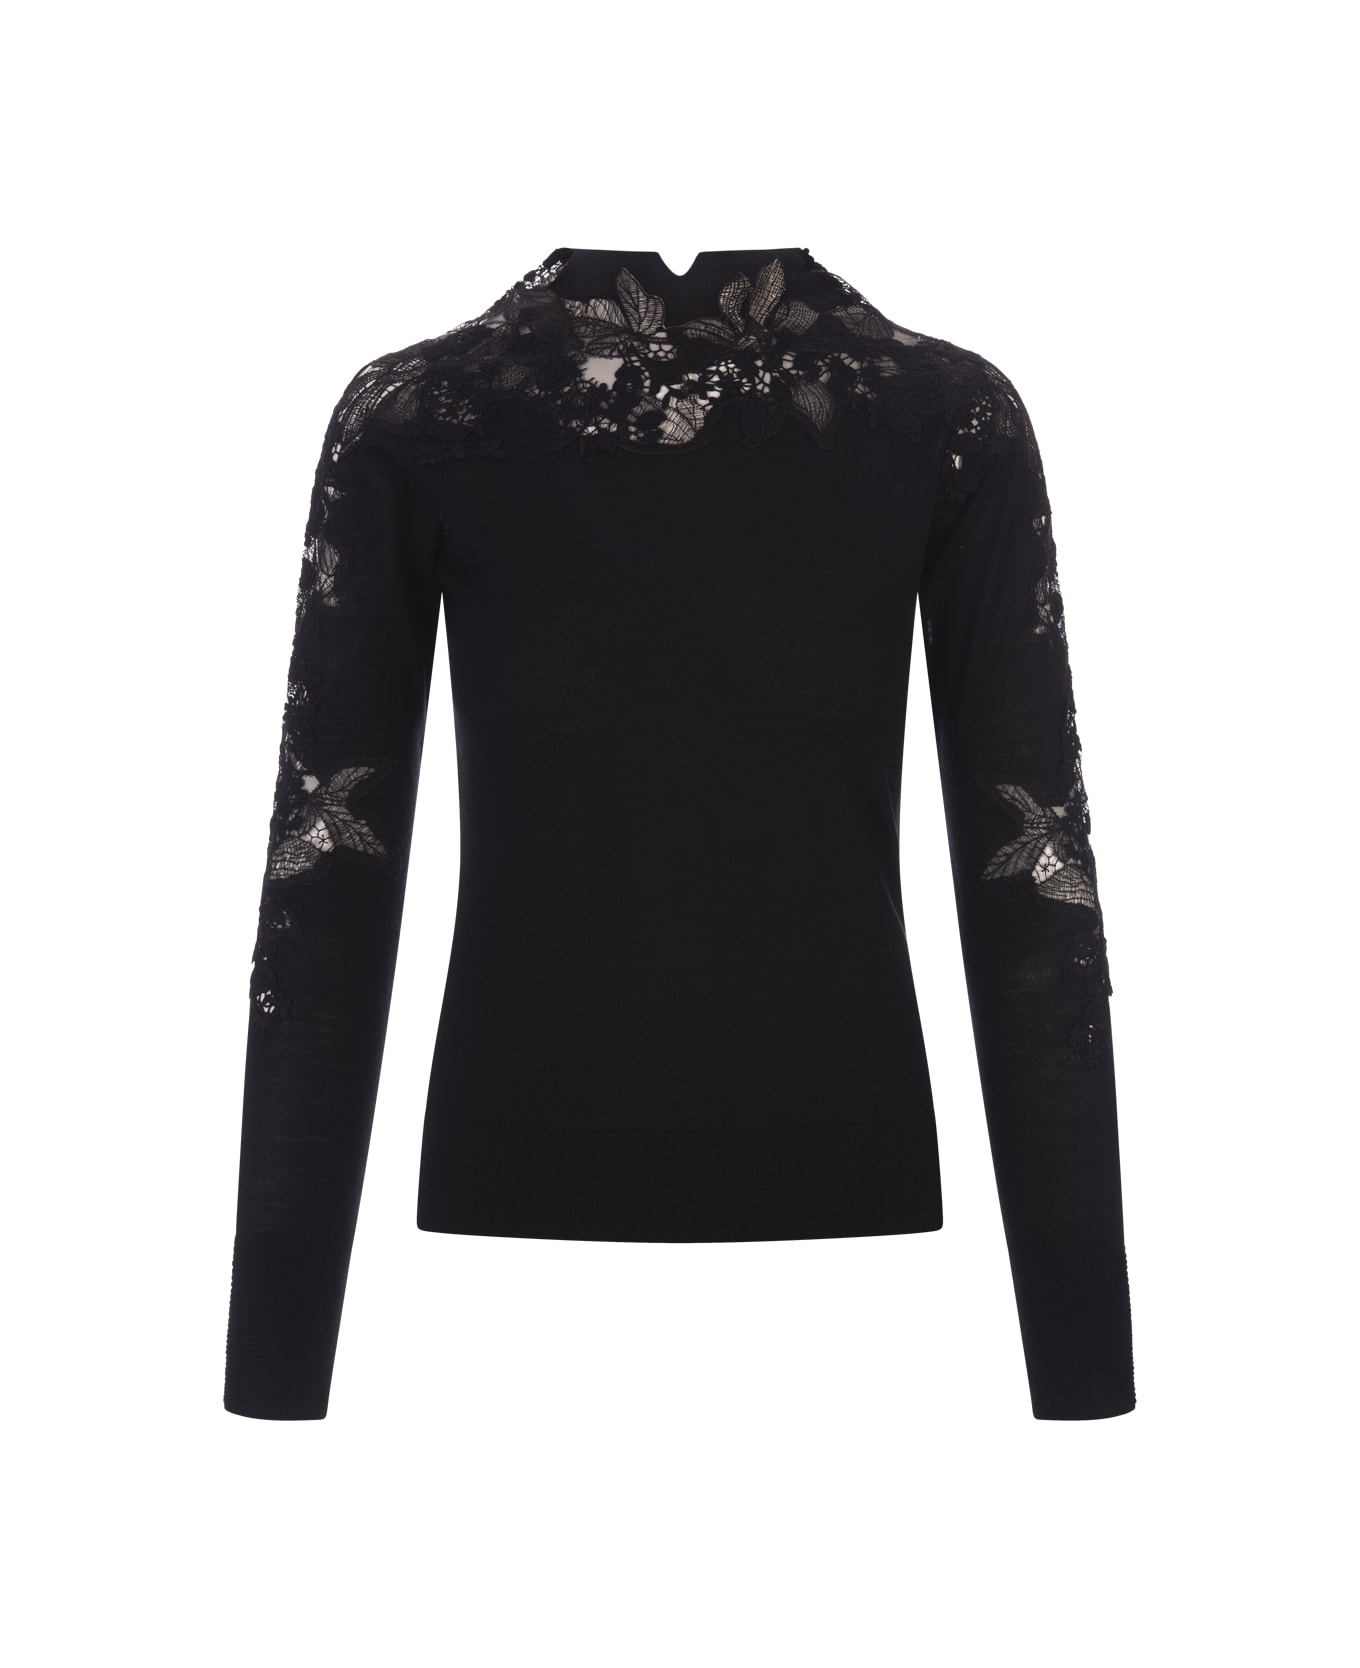 Ermanno Scervino Black Sweater With Lace - Nero